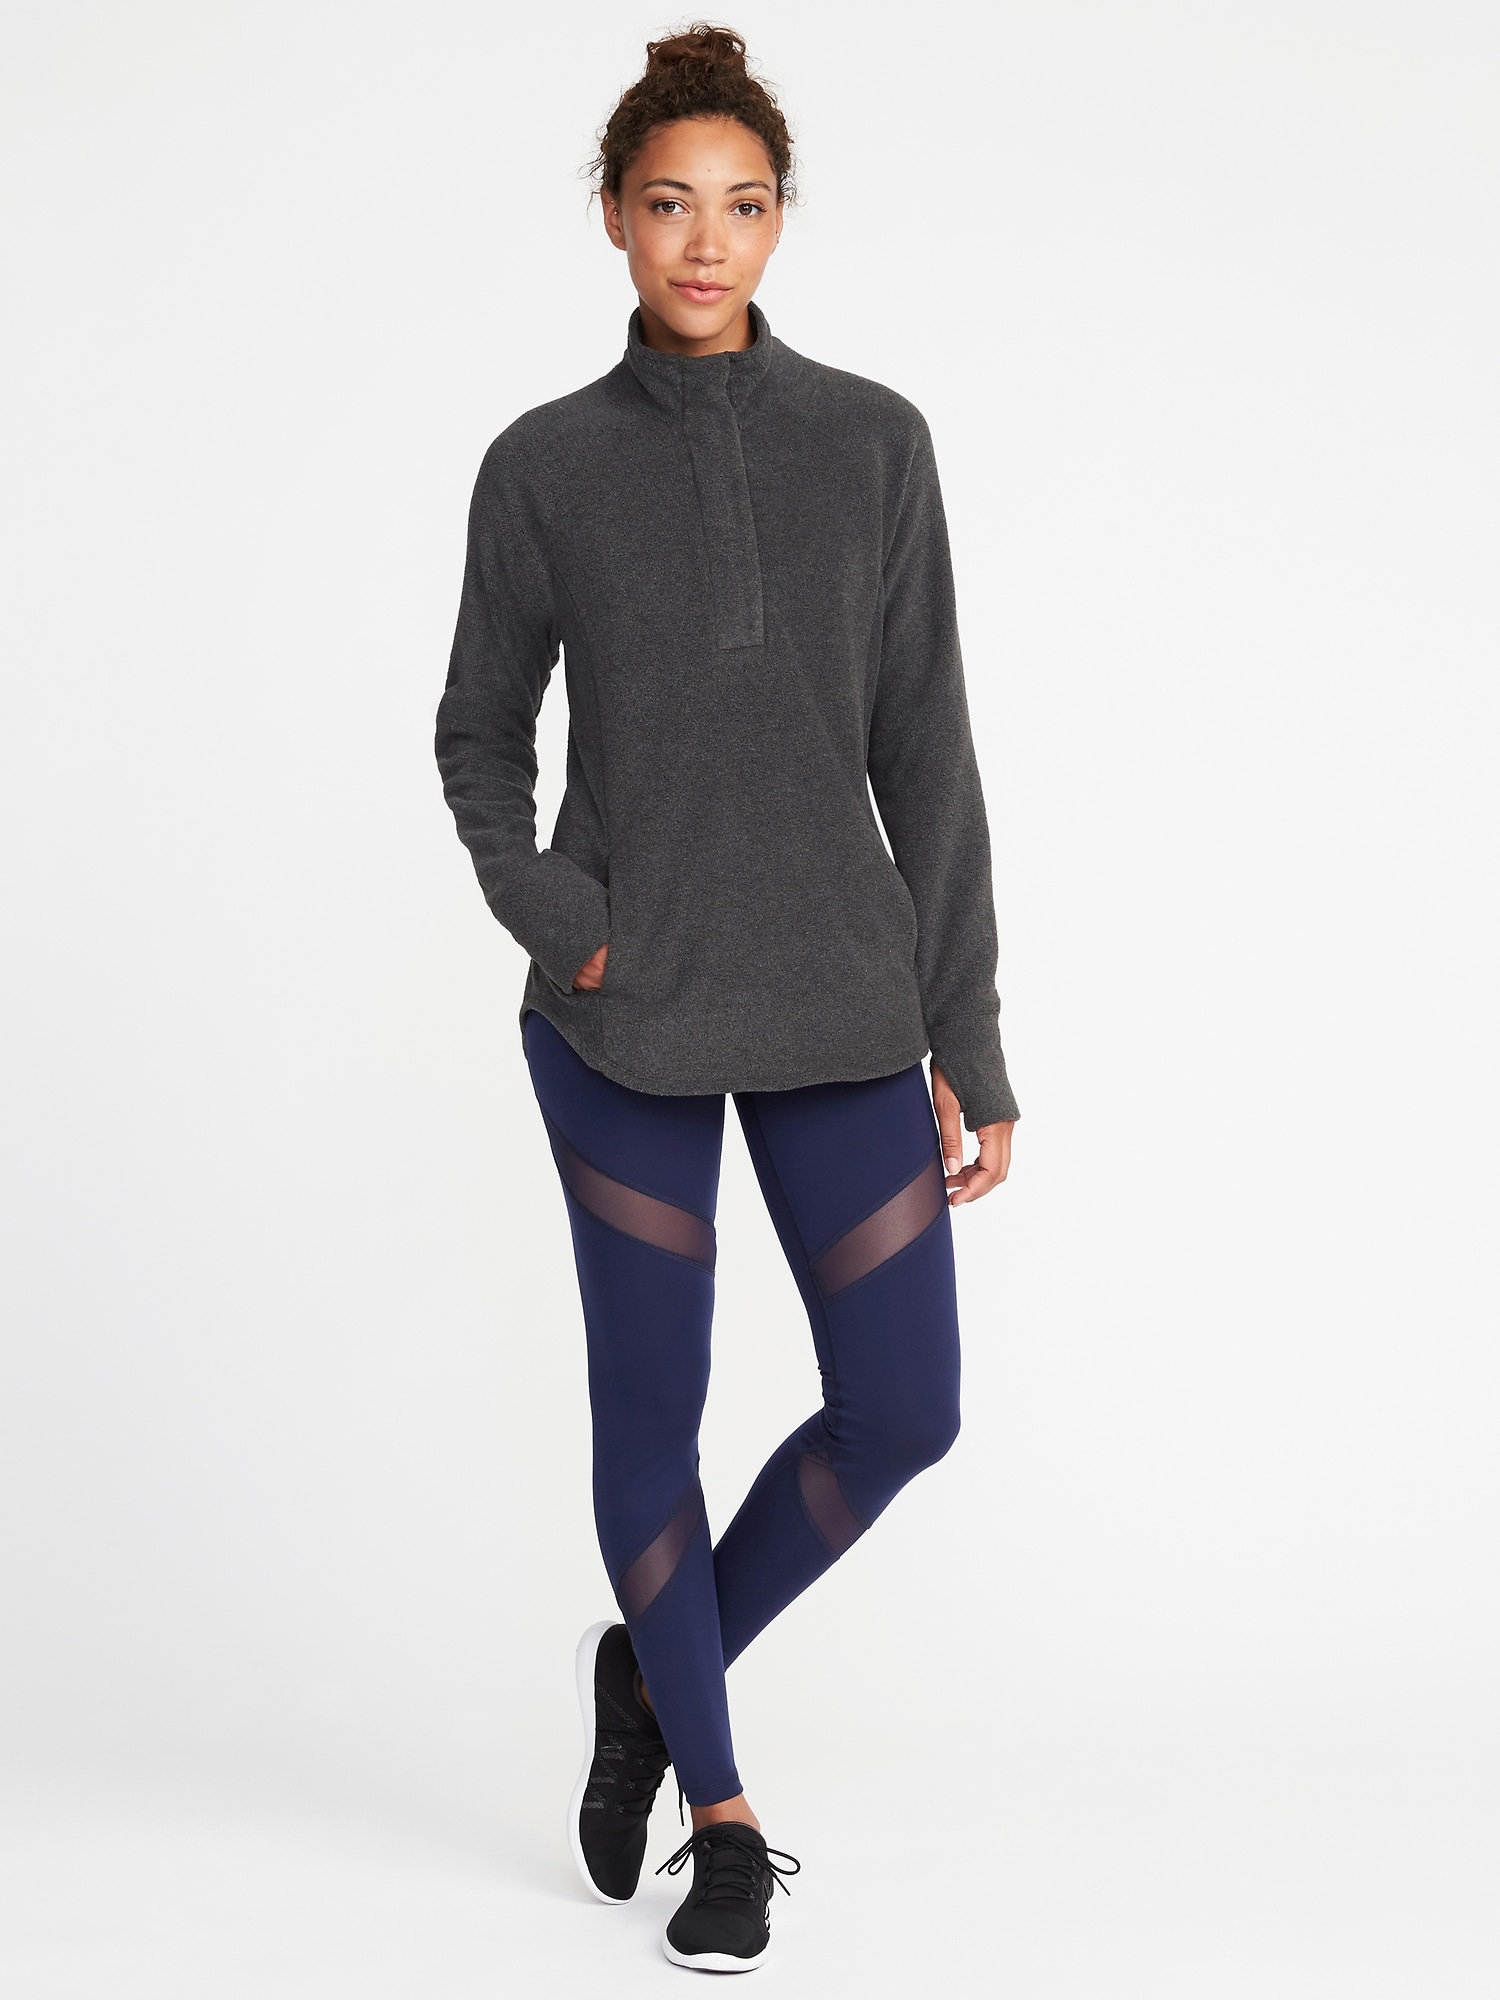 Go-Warm Performance Fleece 1/4-Zip Pullover for Women | Old Navy